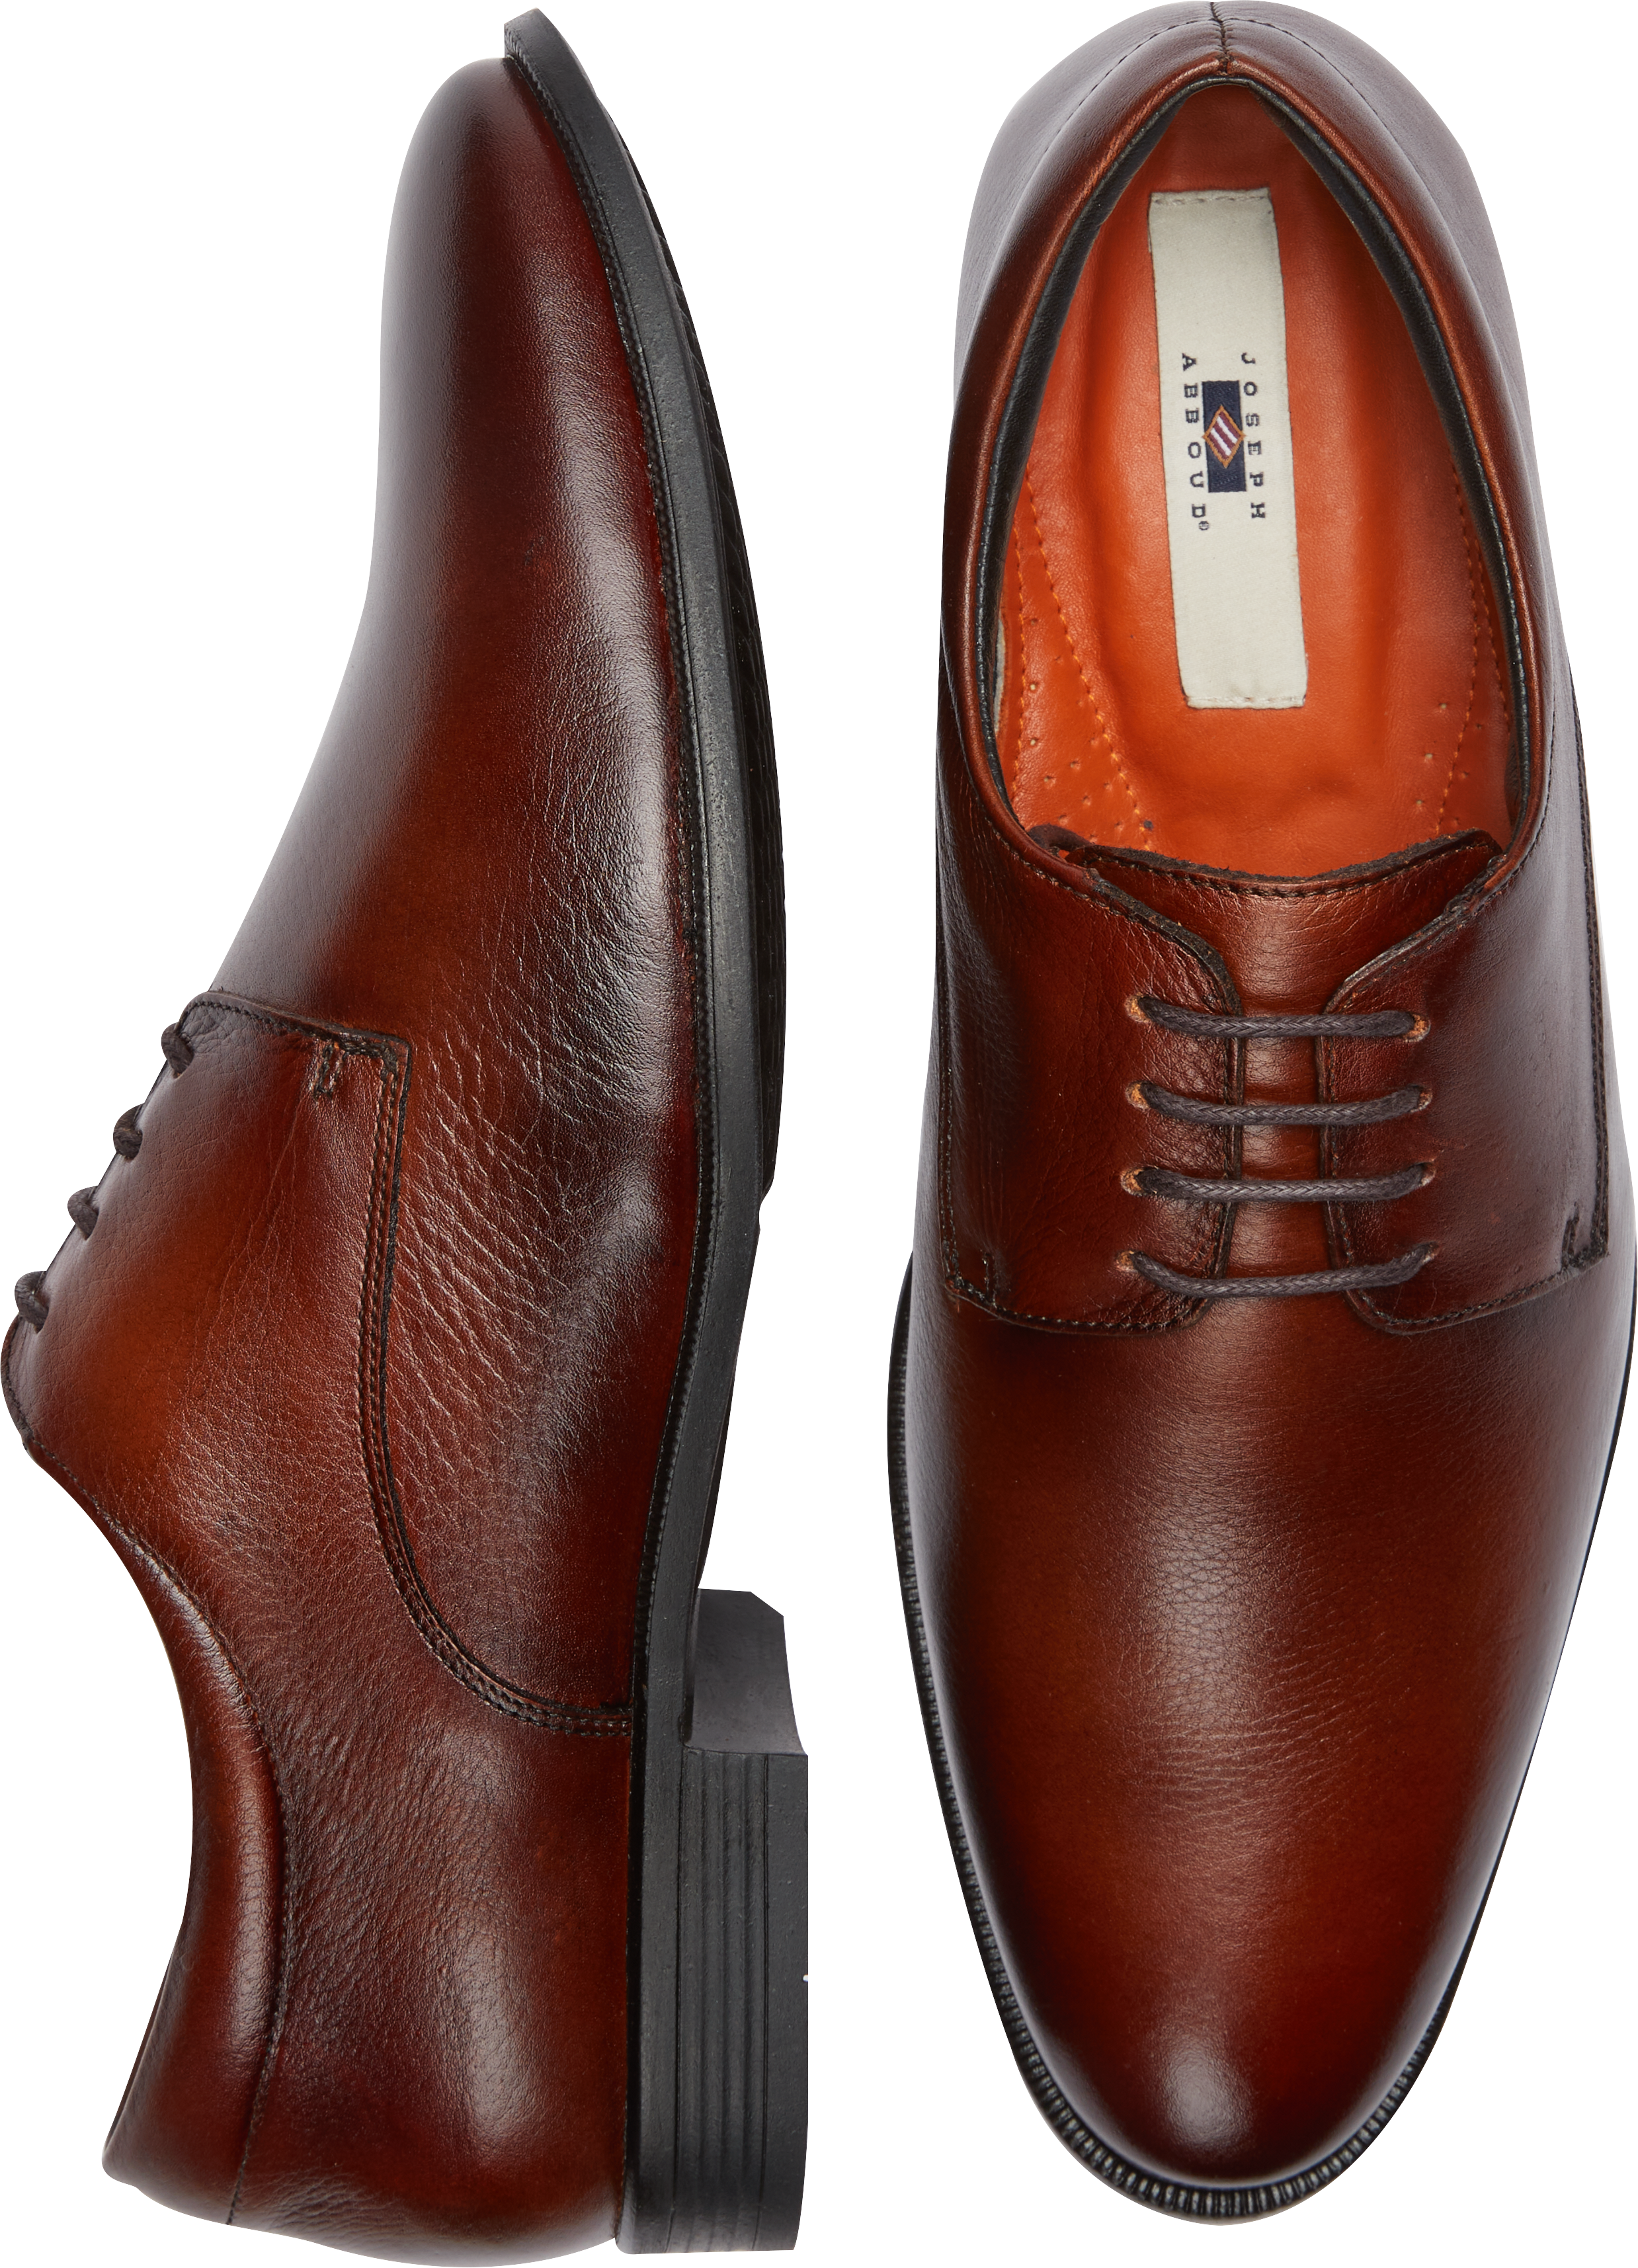 Joseph Abboud Bergamo Plain Toe Oxford, Cognac - Men's Shoes | Men's ...